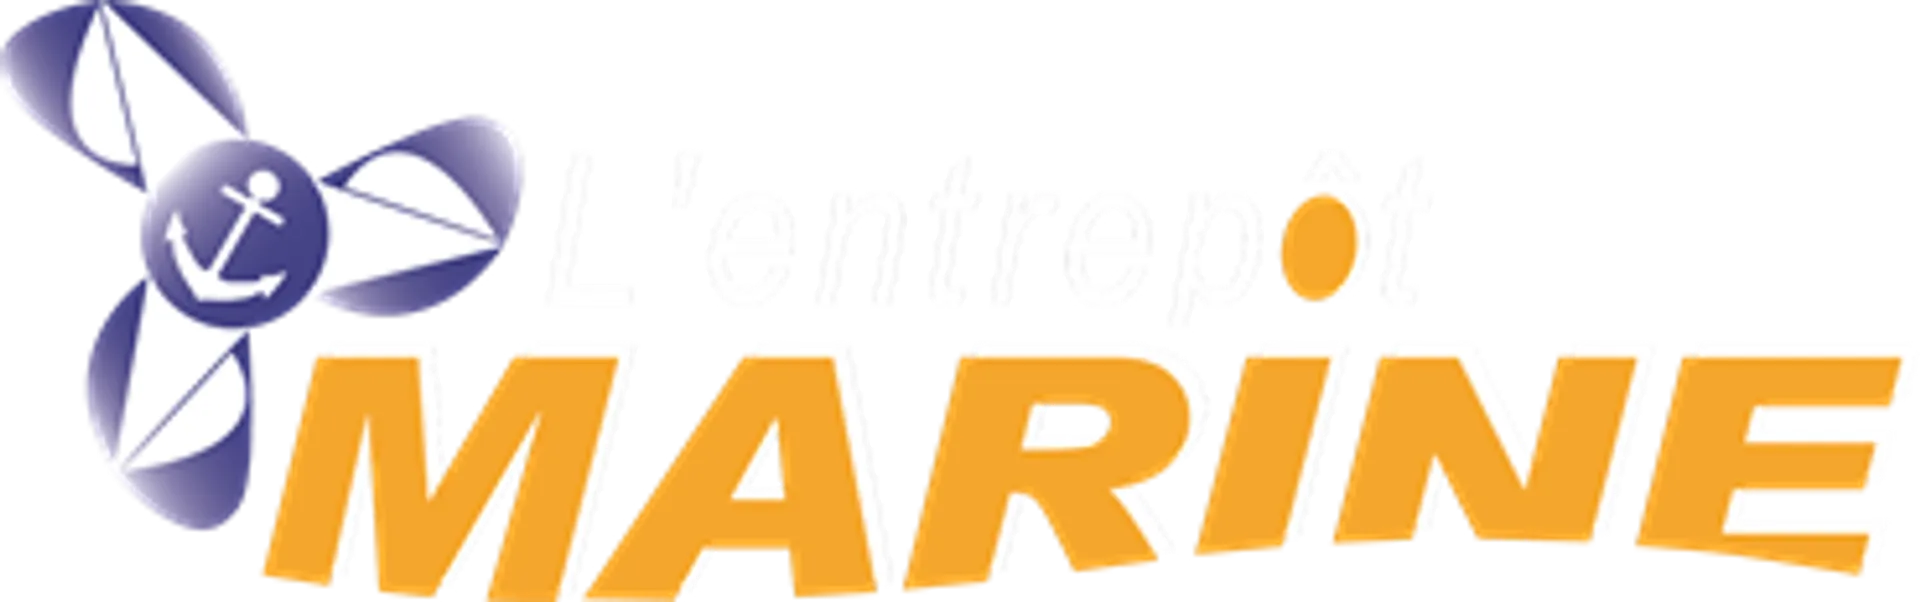 ENTREPOT MARINE logo de circulaires